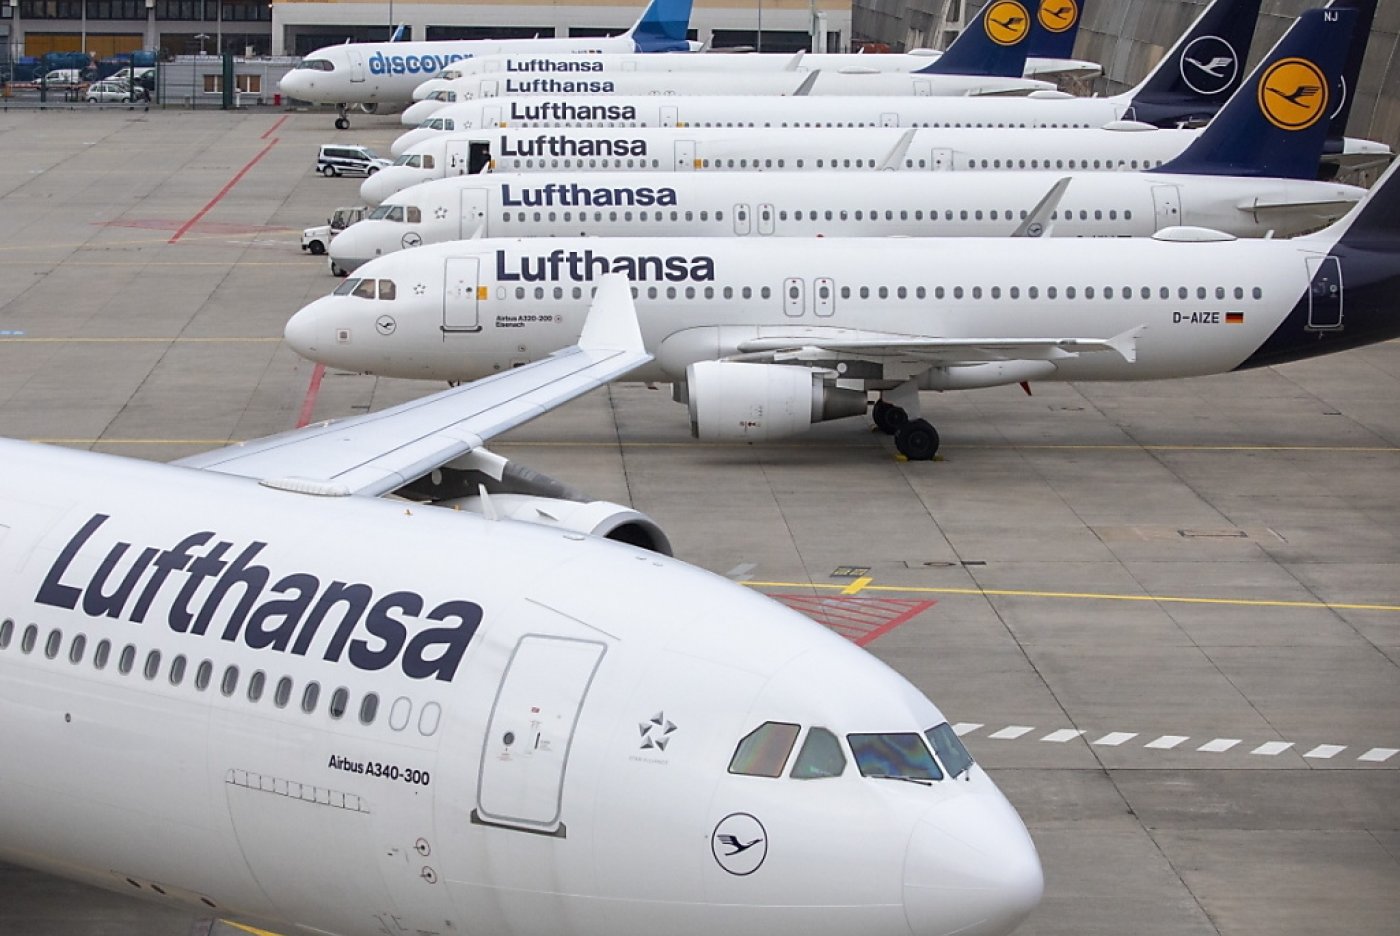 La compagnie aérienne allemande Lufthansa a annoncé mercredi être parvenue à un accord avec son personnel au sol, écartant ainsi des menaces de grève durant la pause pascale. (Photo d'illustration) KEYSTONE